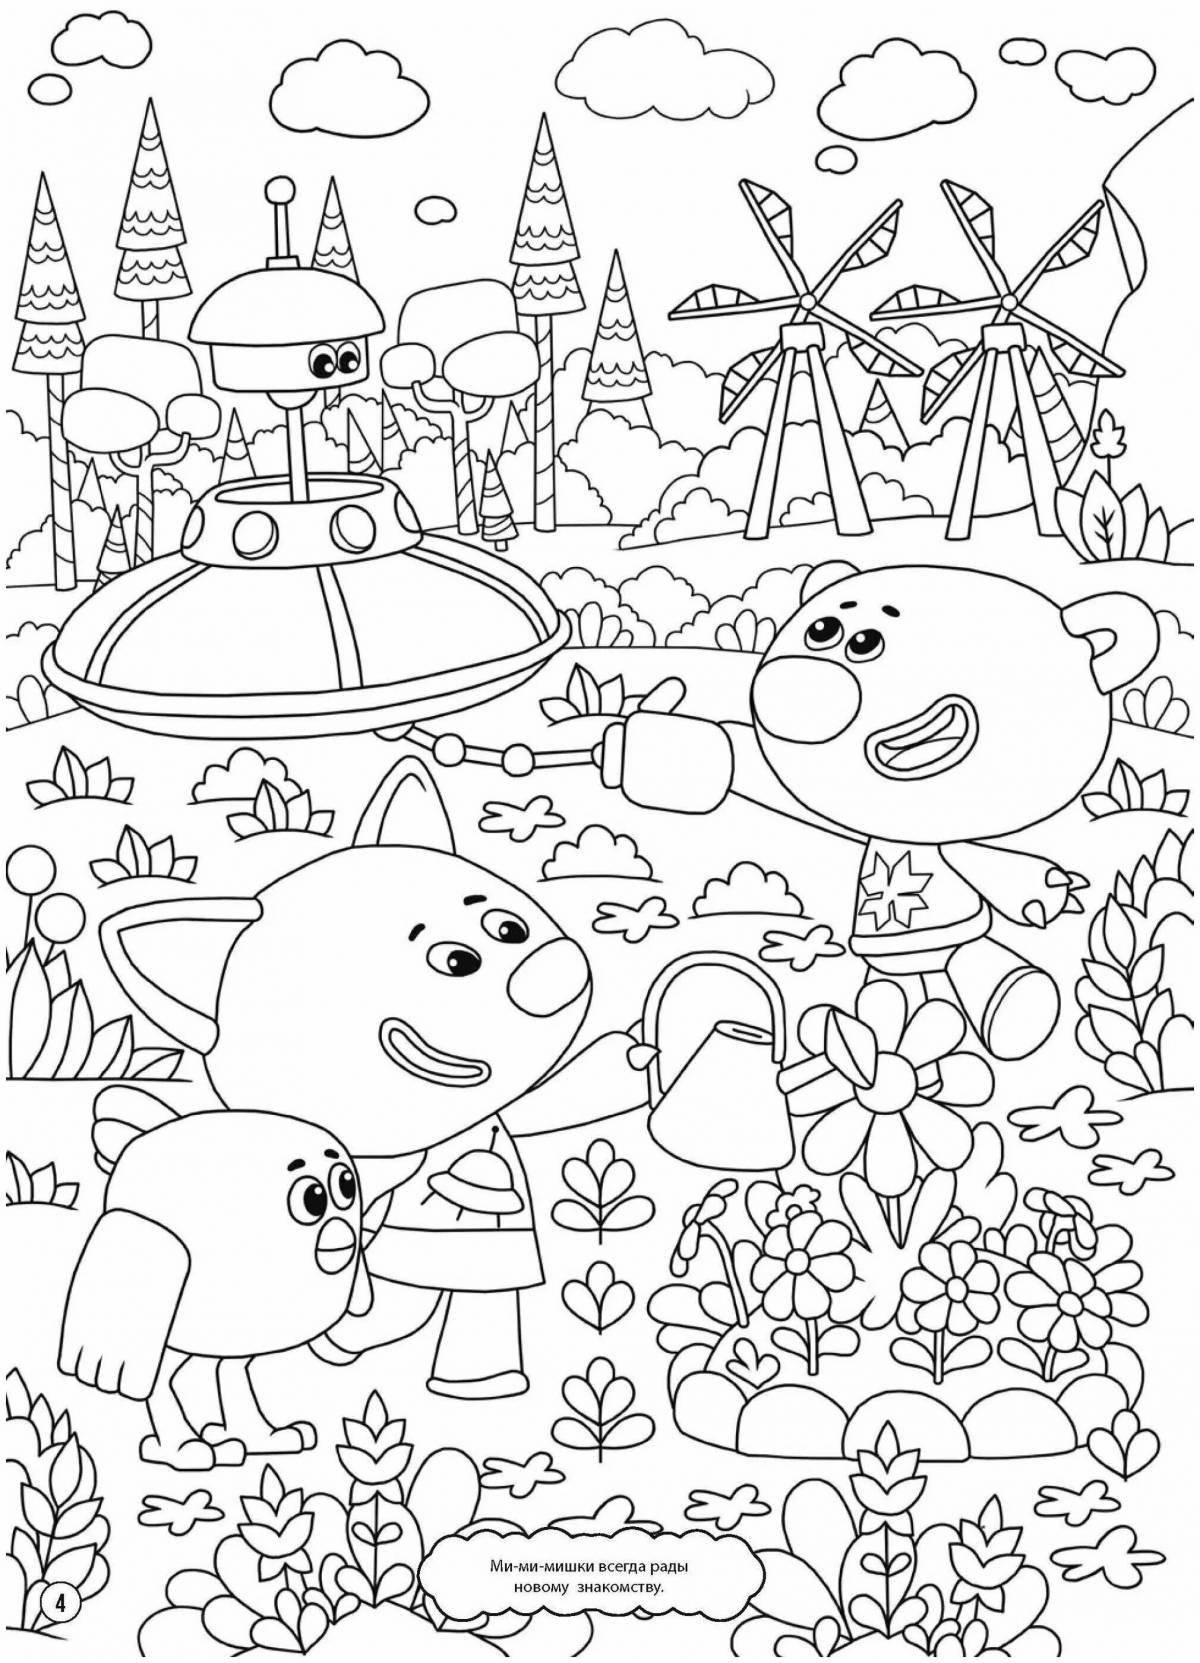 Color cartoon Mimimishki coloring book